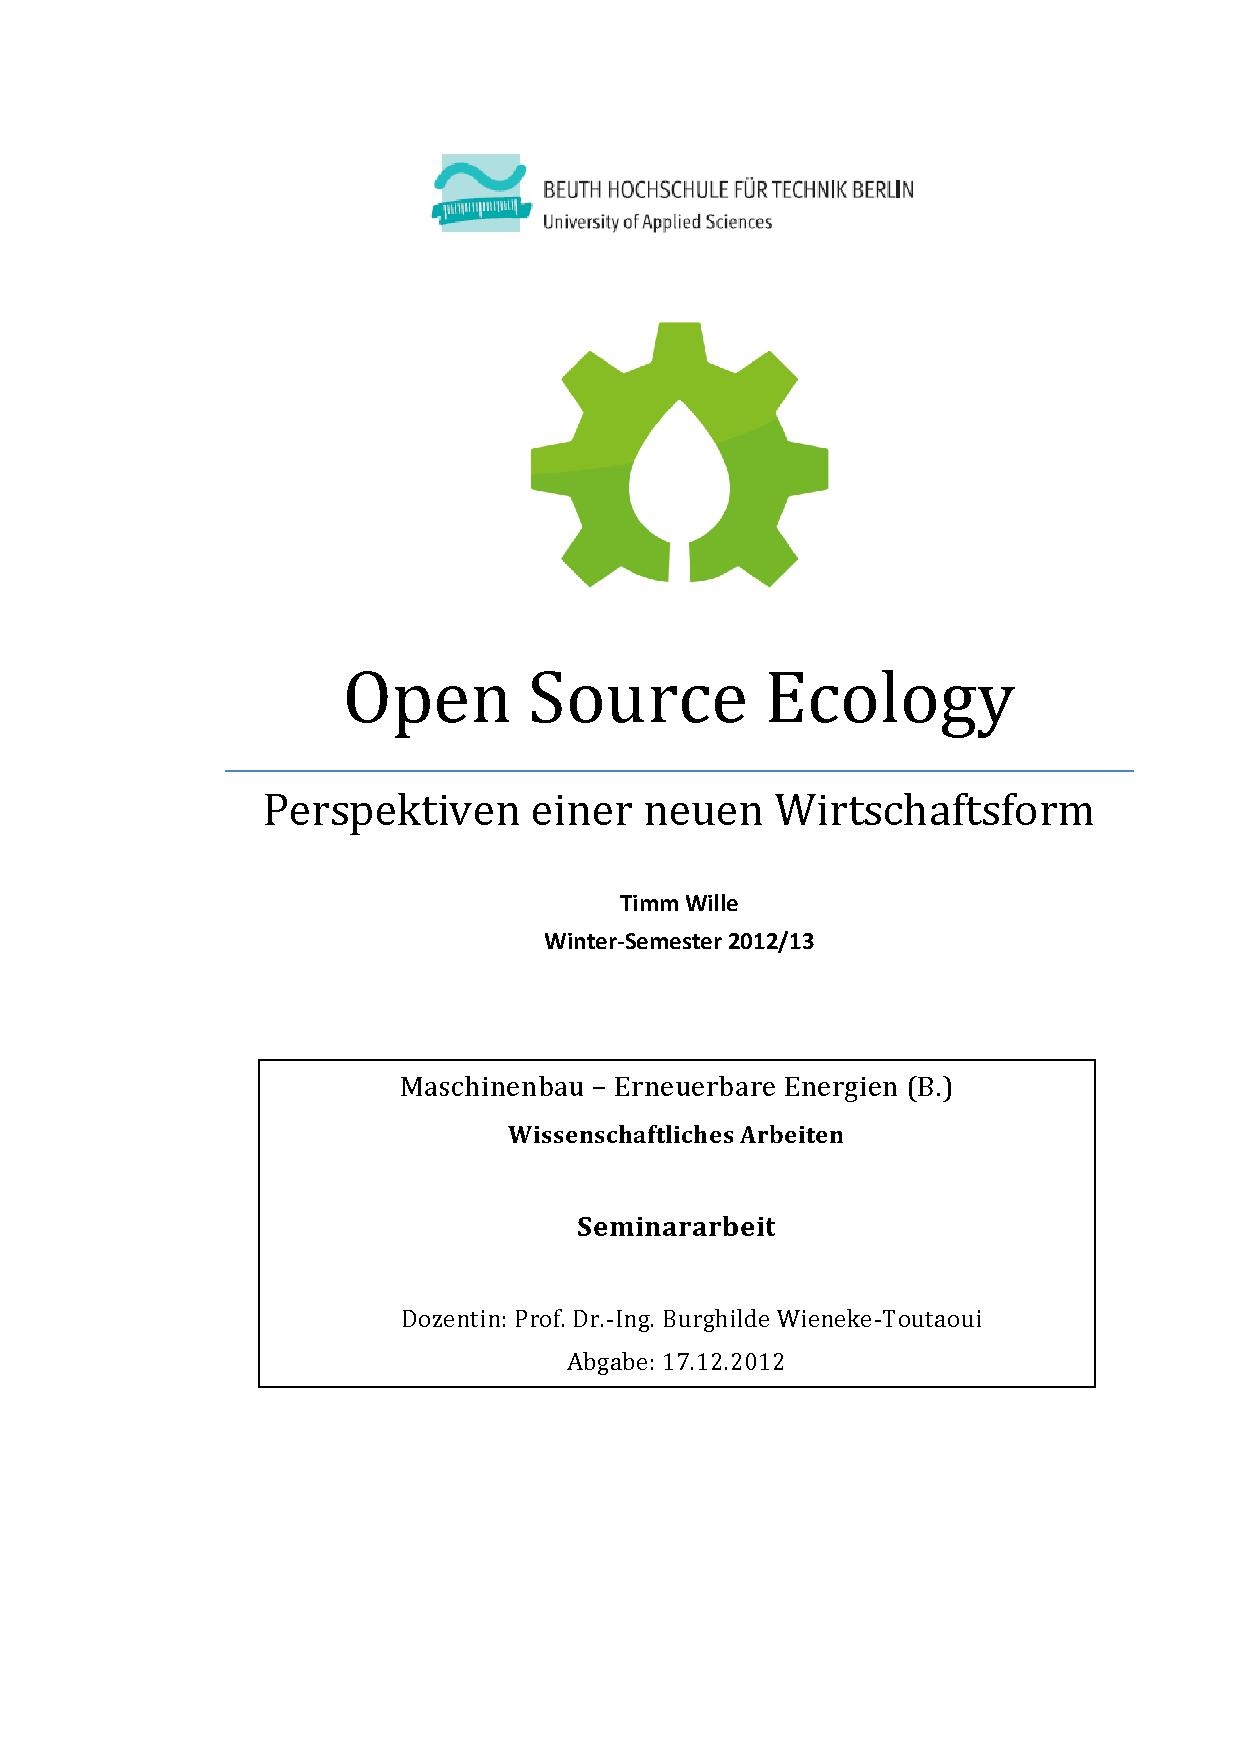 OSE - wissenschaftliche Seminararbeit - Timm Wille - Version 2.pdf